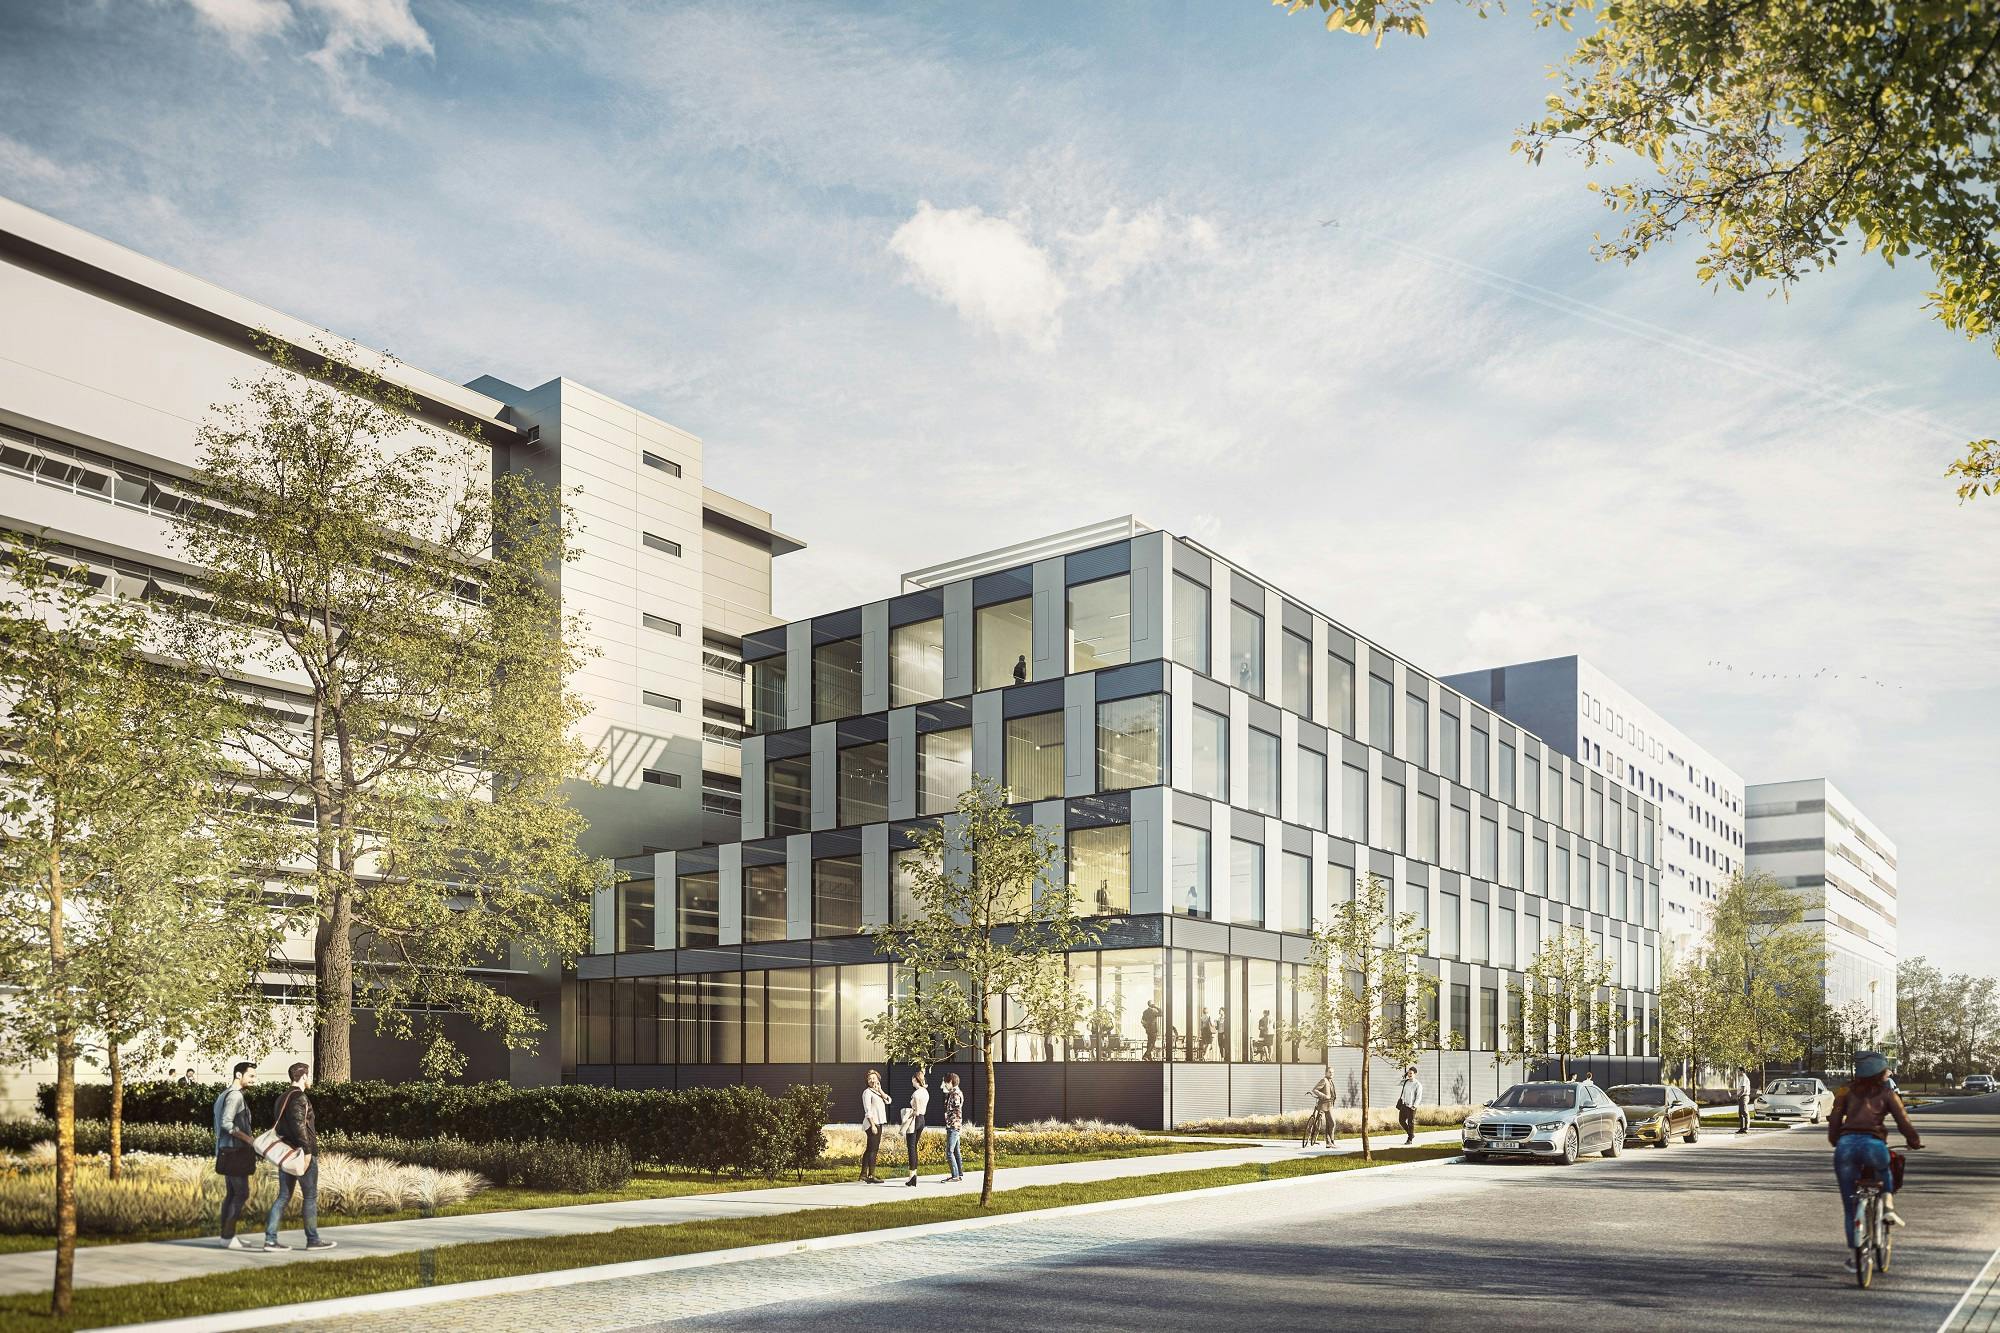 Neubau des Laborgebäudes AT-TRA in Berlin-Adlershof